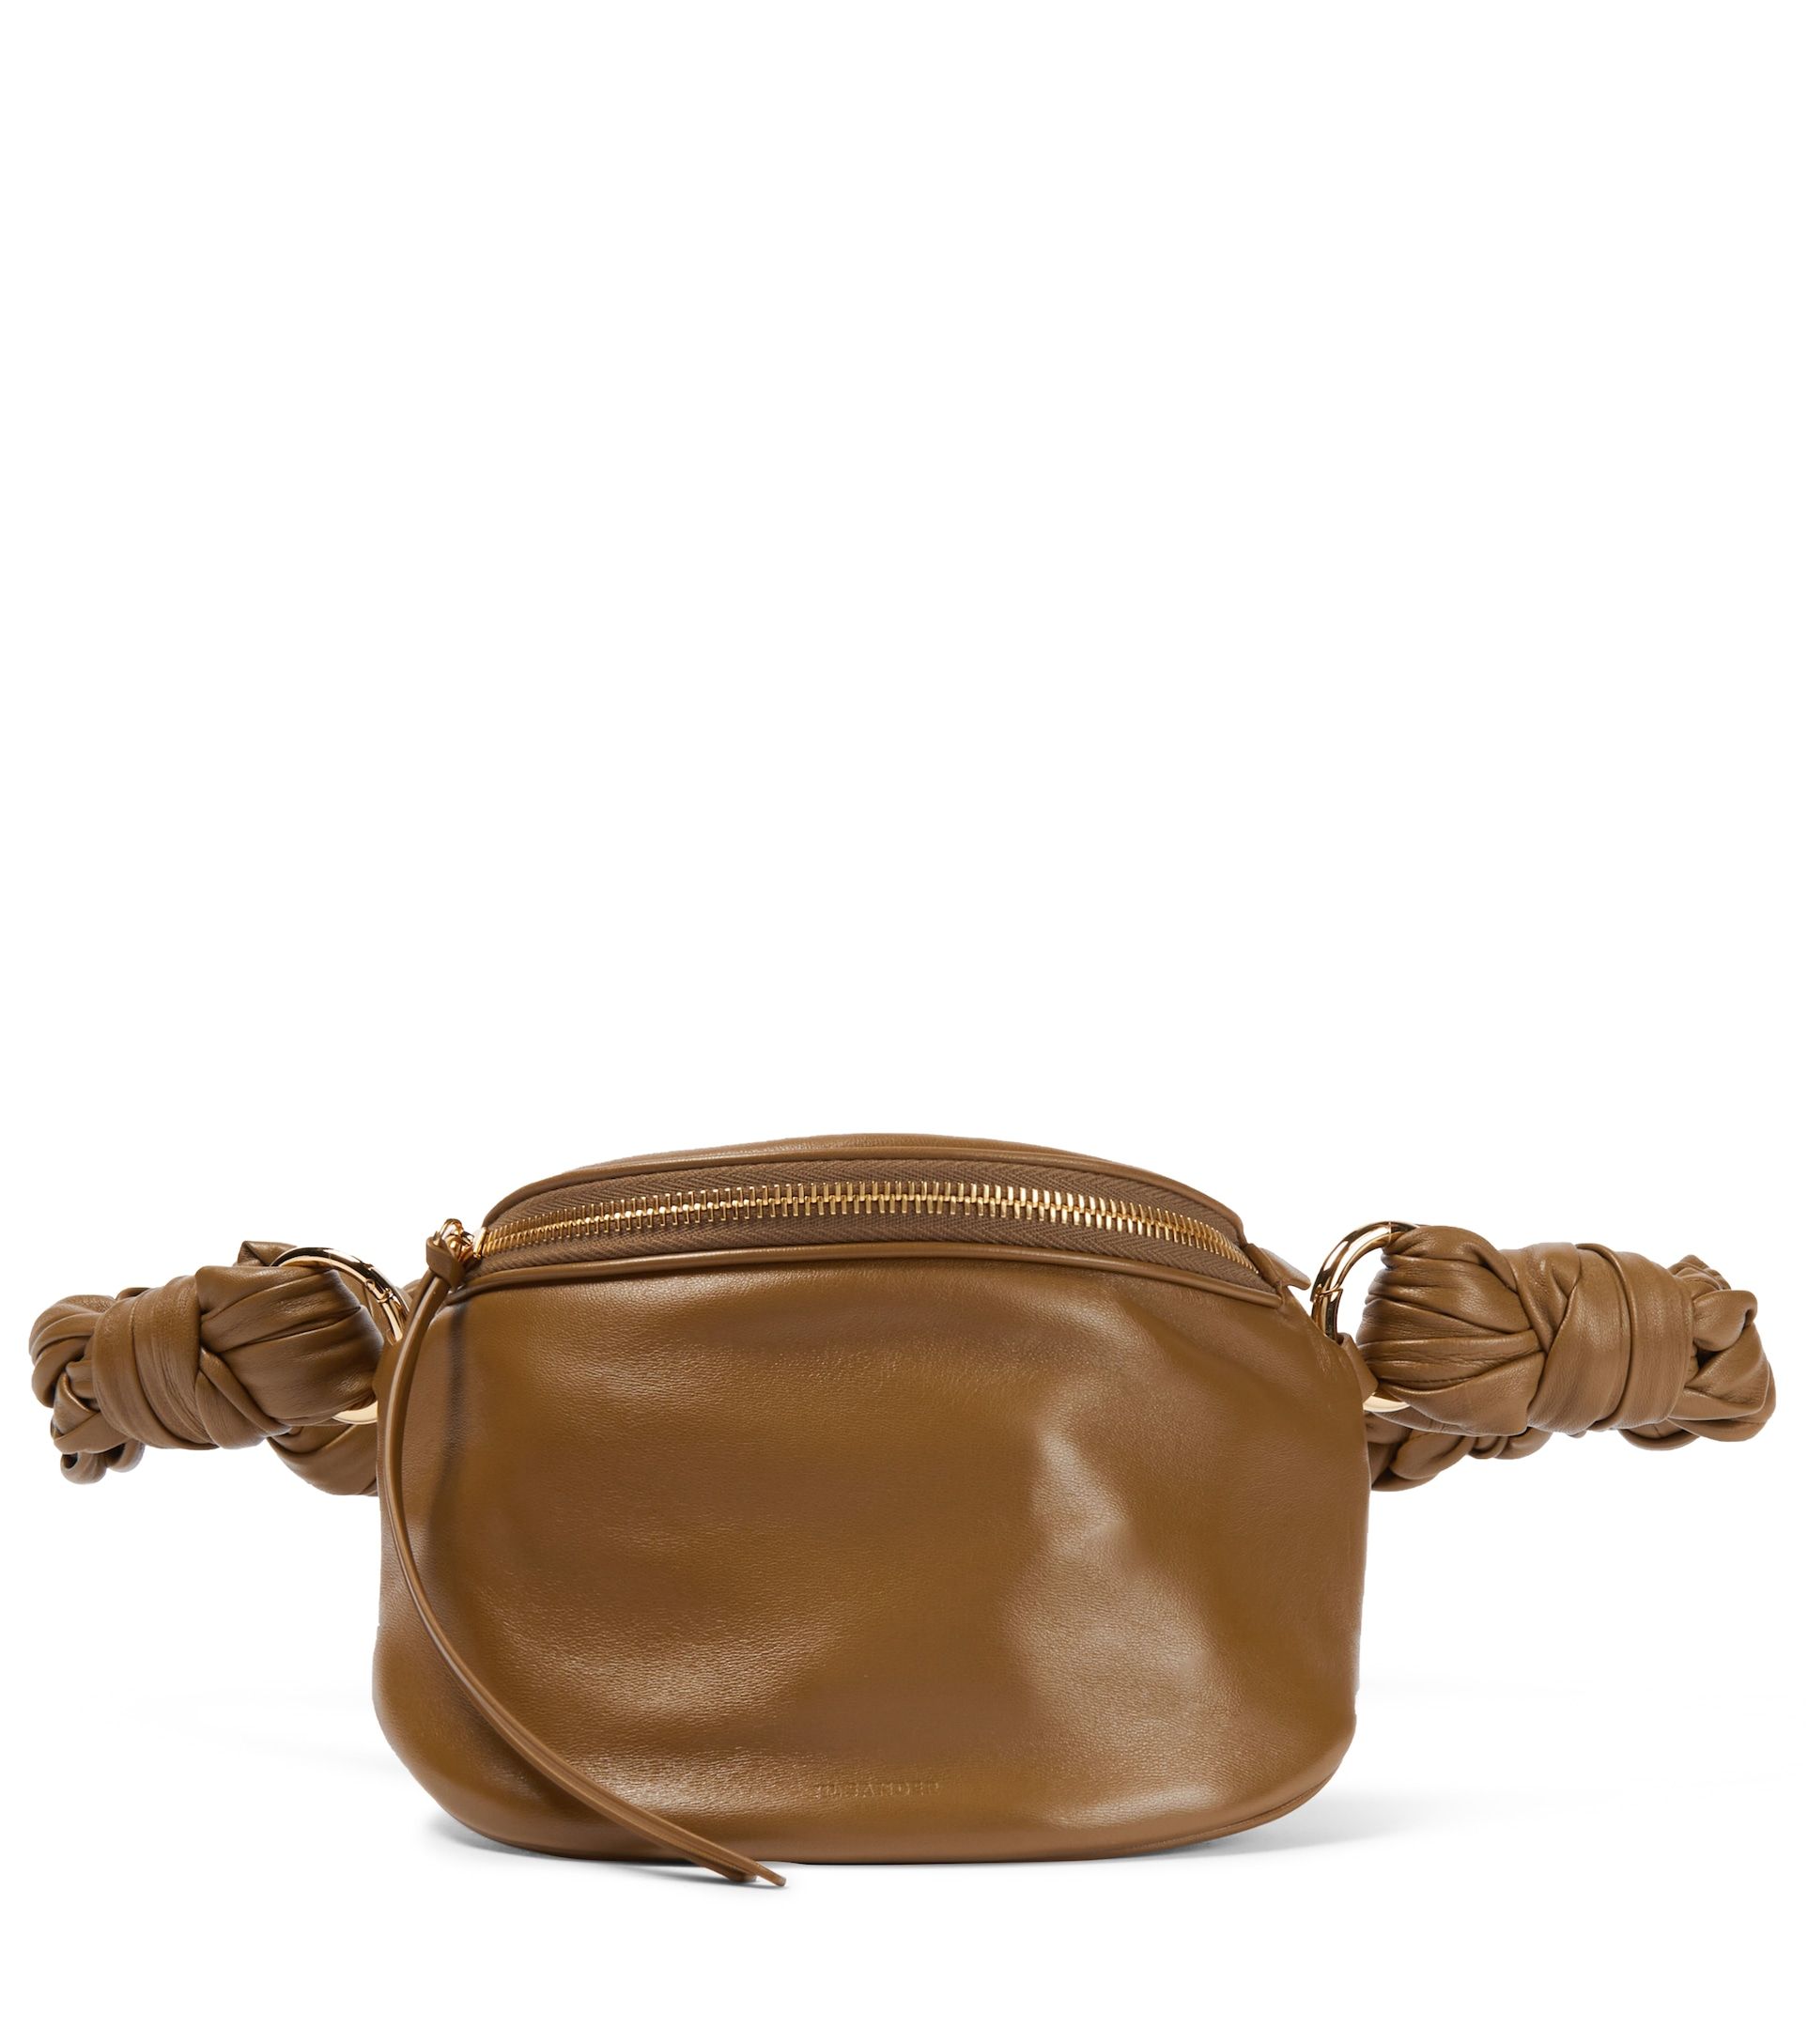 Chic Women PU Leather Fanny Pack Waist Bum Bag Chain Link Belt Purse Wallet 